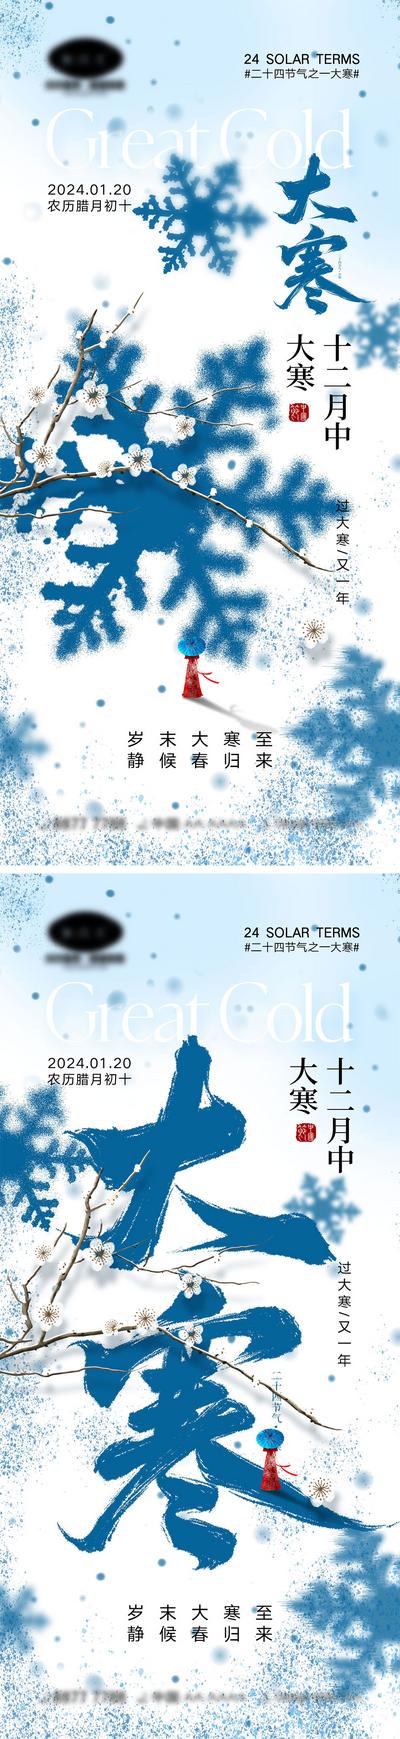 南门网 海报 系列 二十四节气 大雪 冬至 小寒 大寒 下雪 雪花 饺子 汤圆 团圆 回家 幸福 房地产 剪影